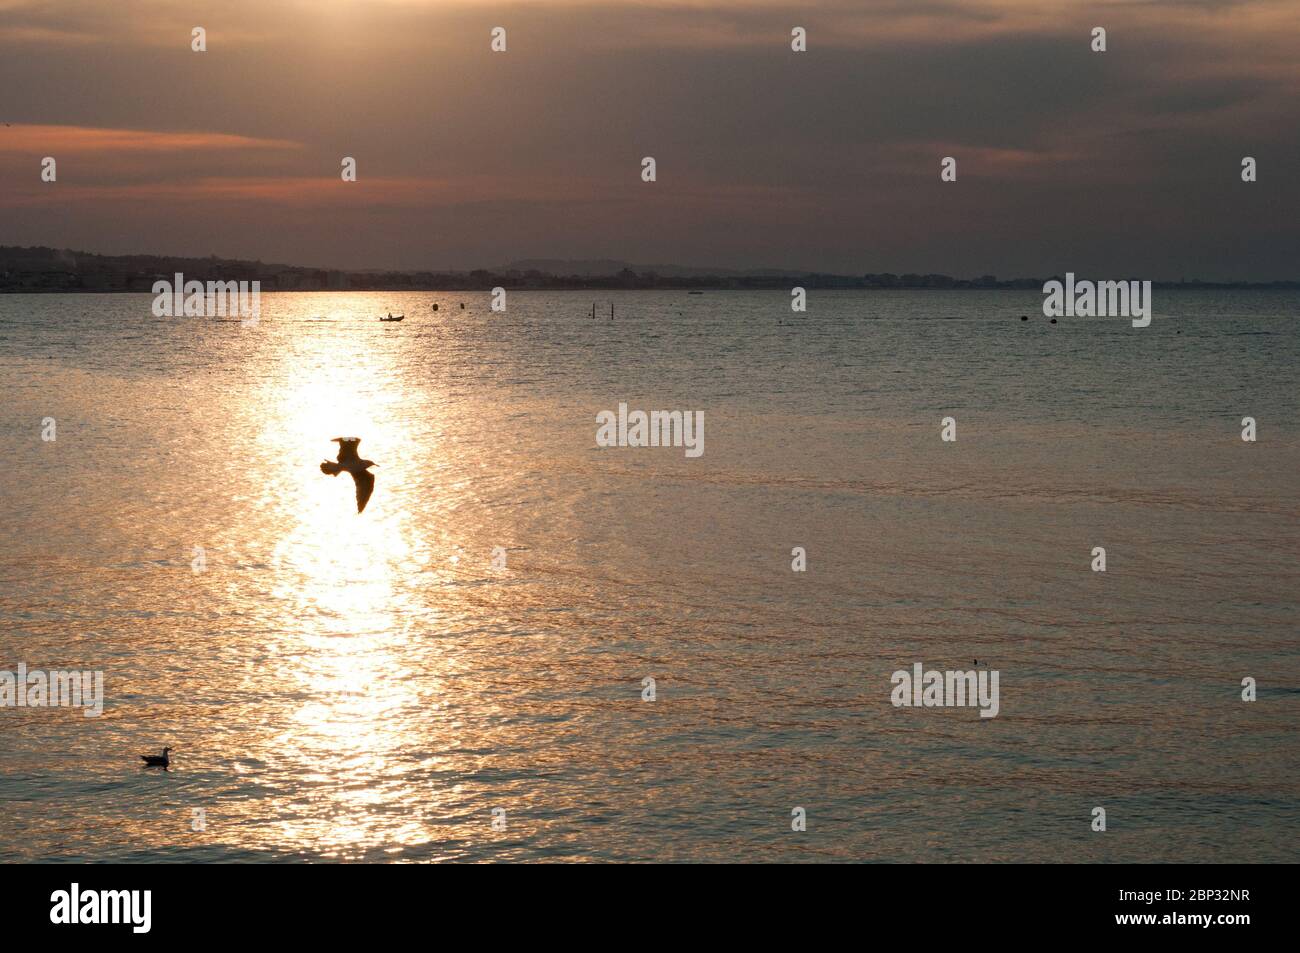 soleil réfléchissant sur l'eau de la rive et un mouette passant dans le rayon de lumière. au loin un bateau avec des figures humaines. panorama de la plage et s Banque D'Images